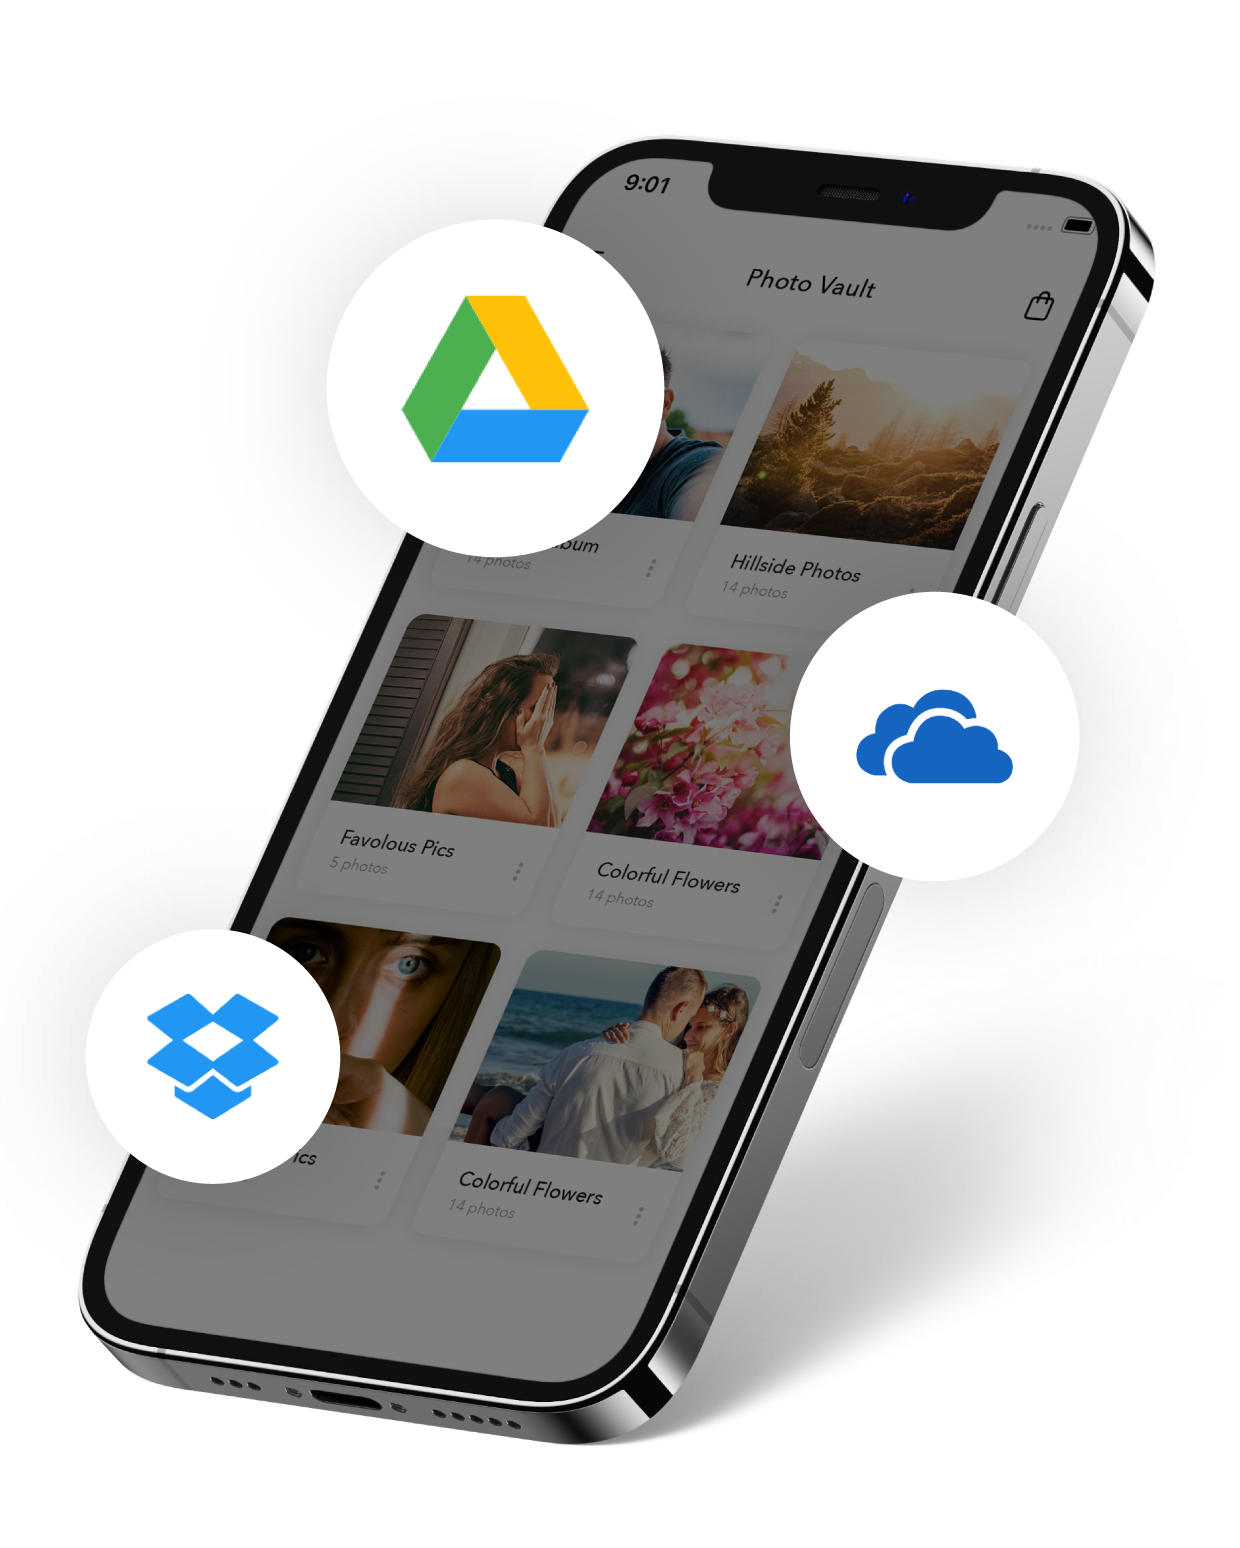 Importieren Sie Fotos und Videos aus der Cloud mit der Photo Vault iPhone App